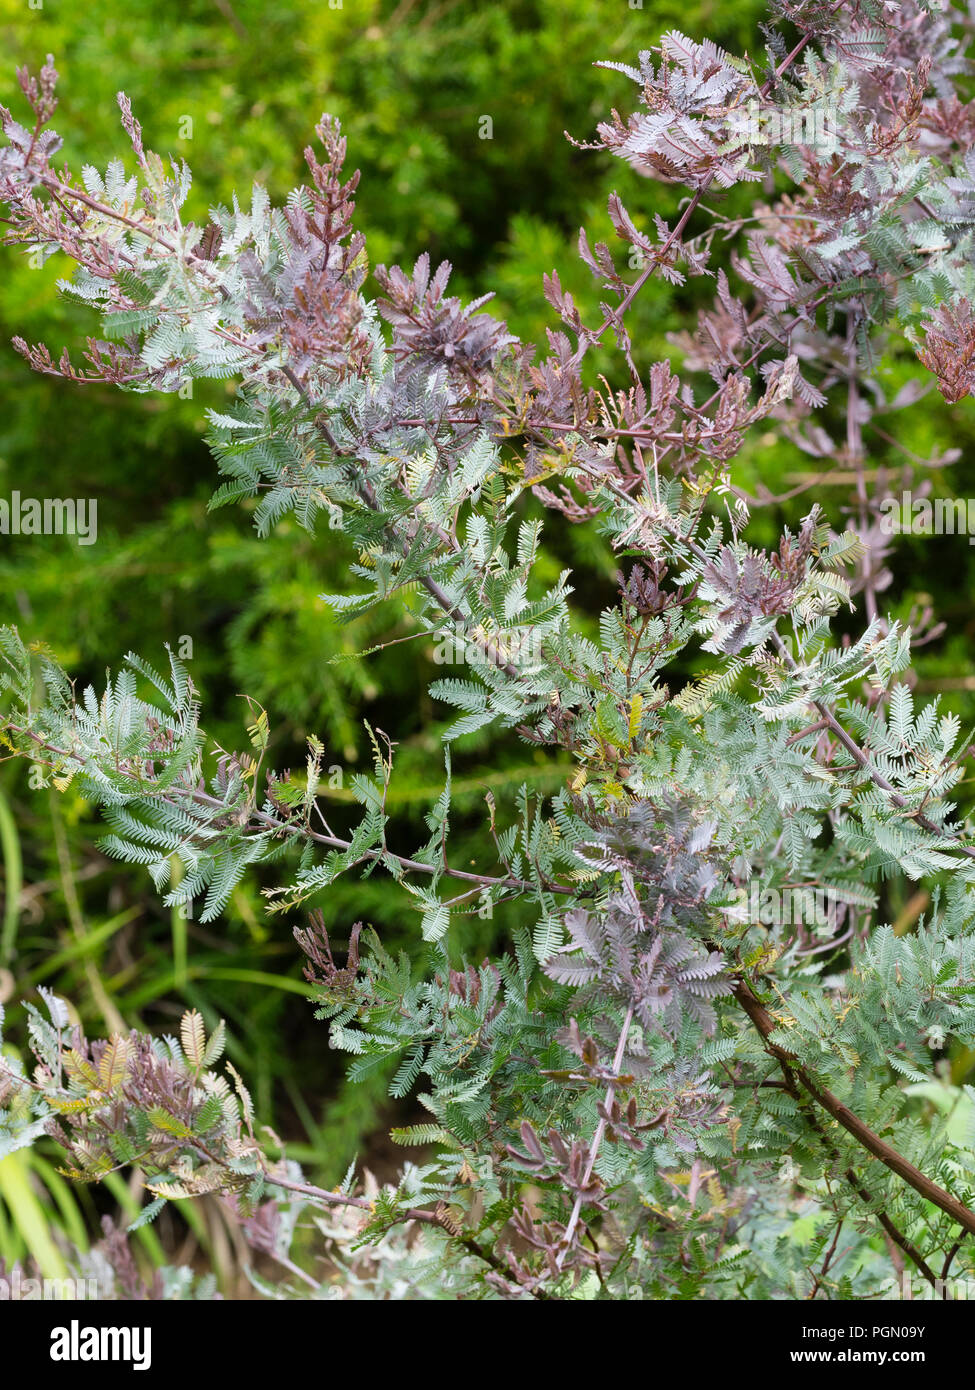 Feathery bronzo e il fogliame argentato della metà hardy Cootamundra bargiglio, Acacia baileyana 'Purpurea' Foto Stock